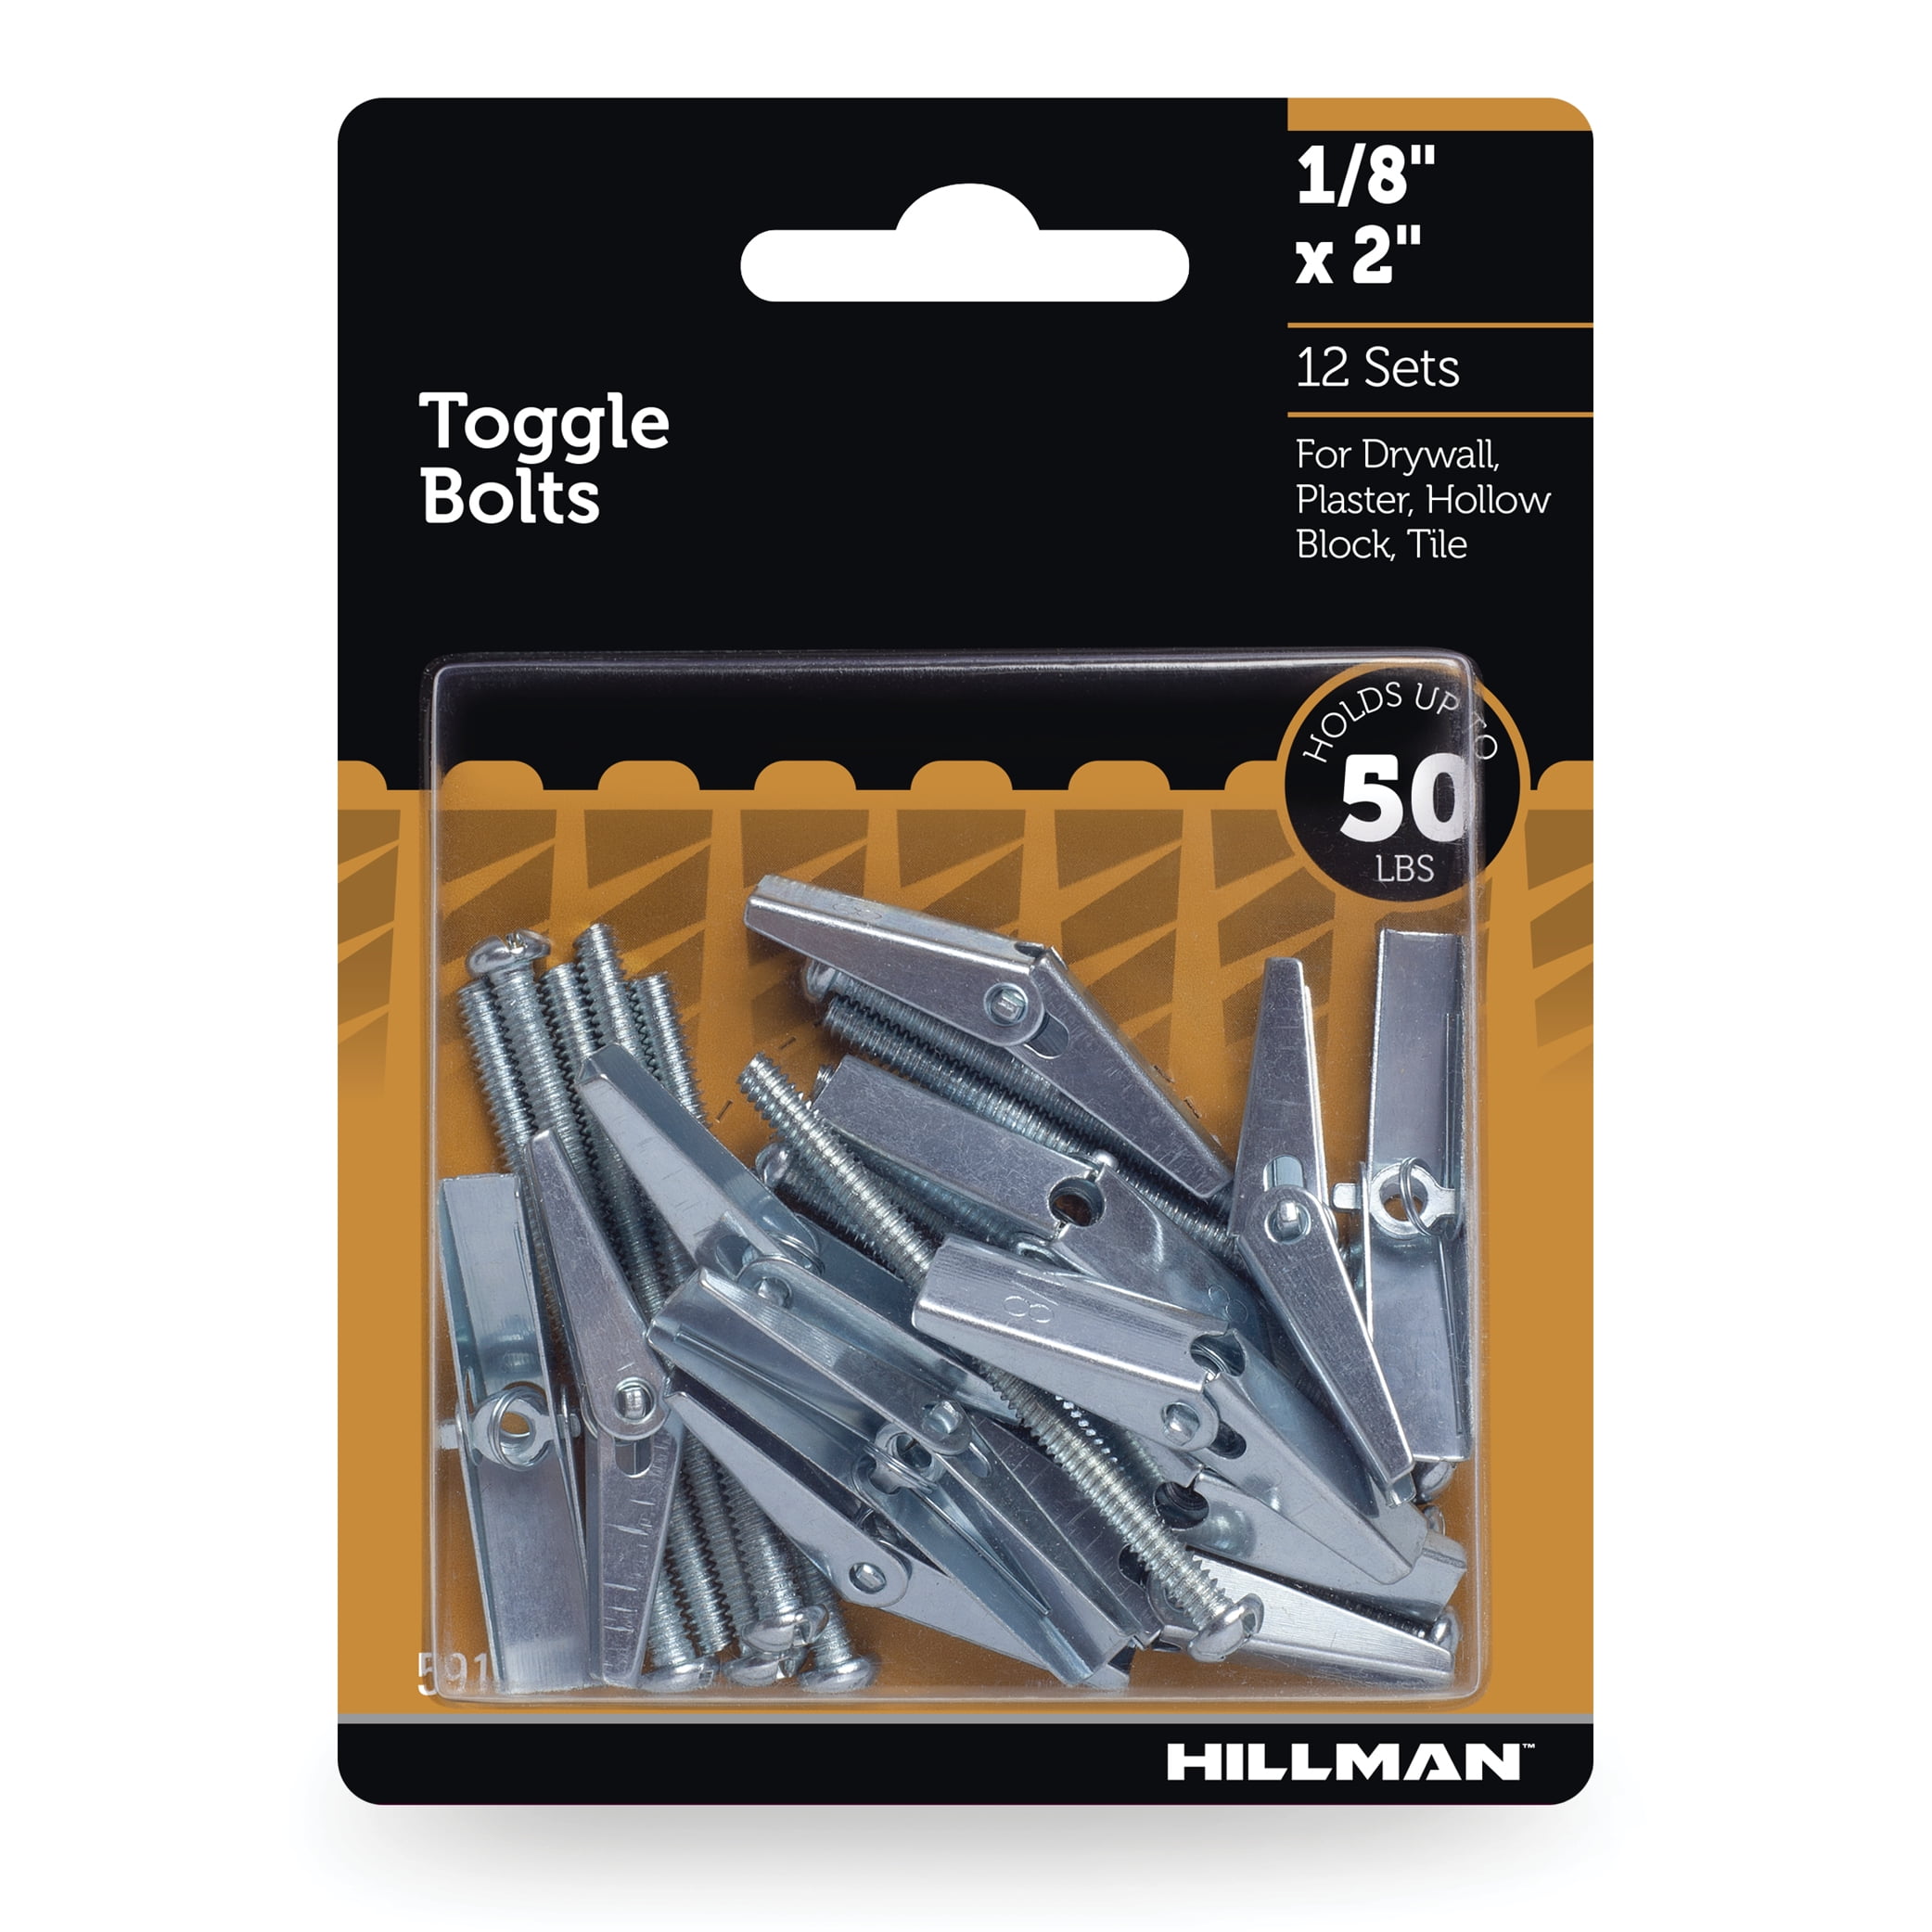 Hillman Toggle Bolts, 1/8" x 2", Zinc Plated, Steel, 50 lbs, 12 Sets